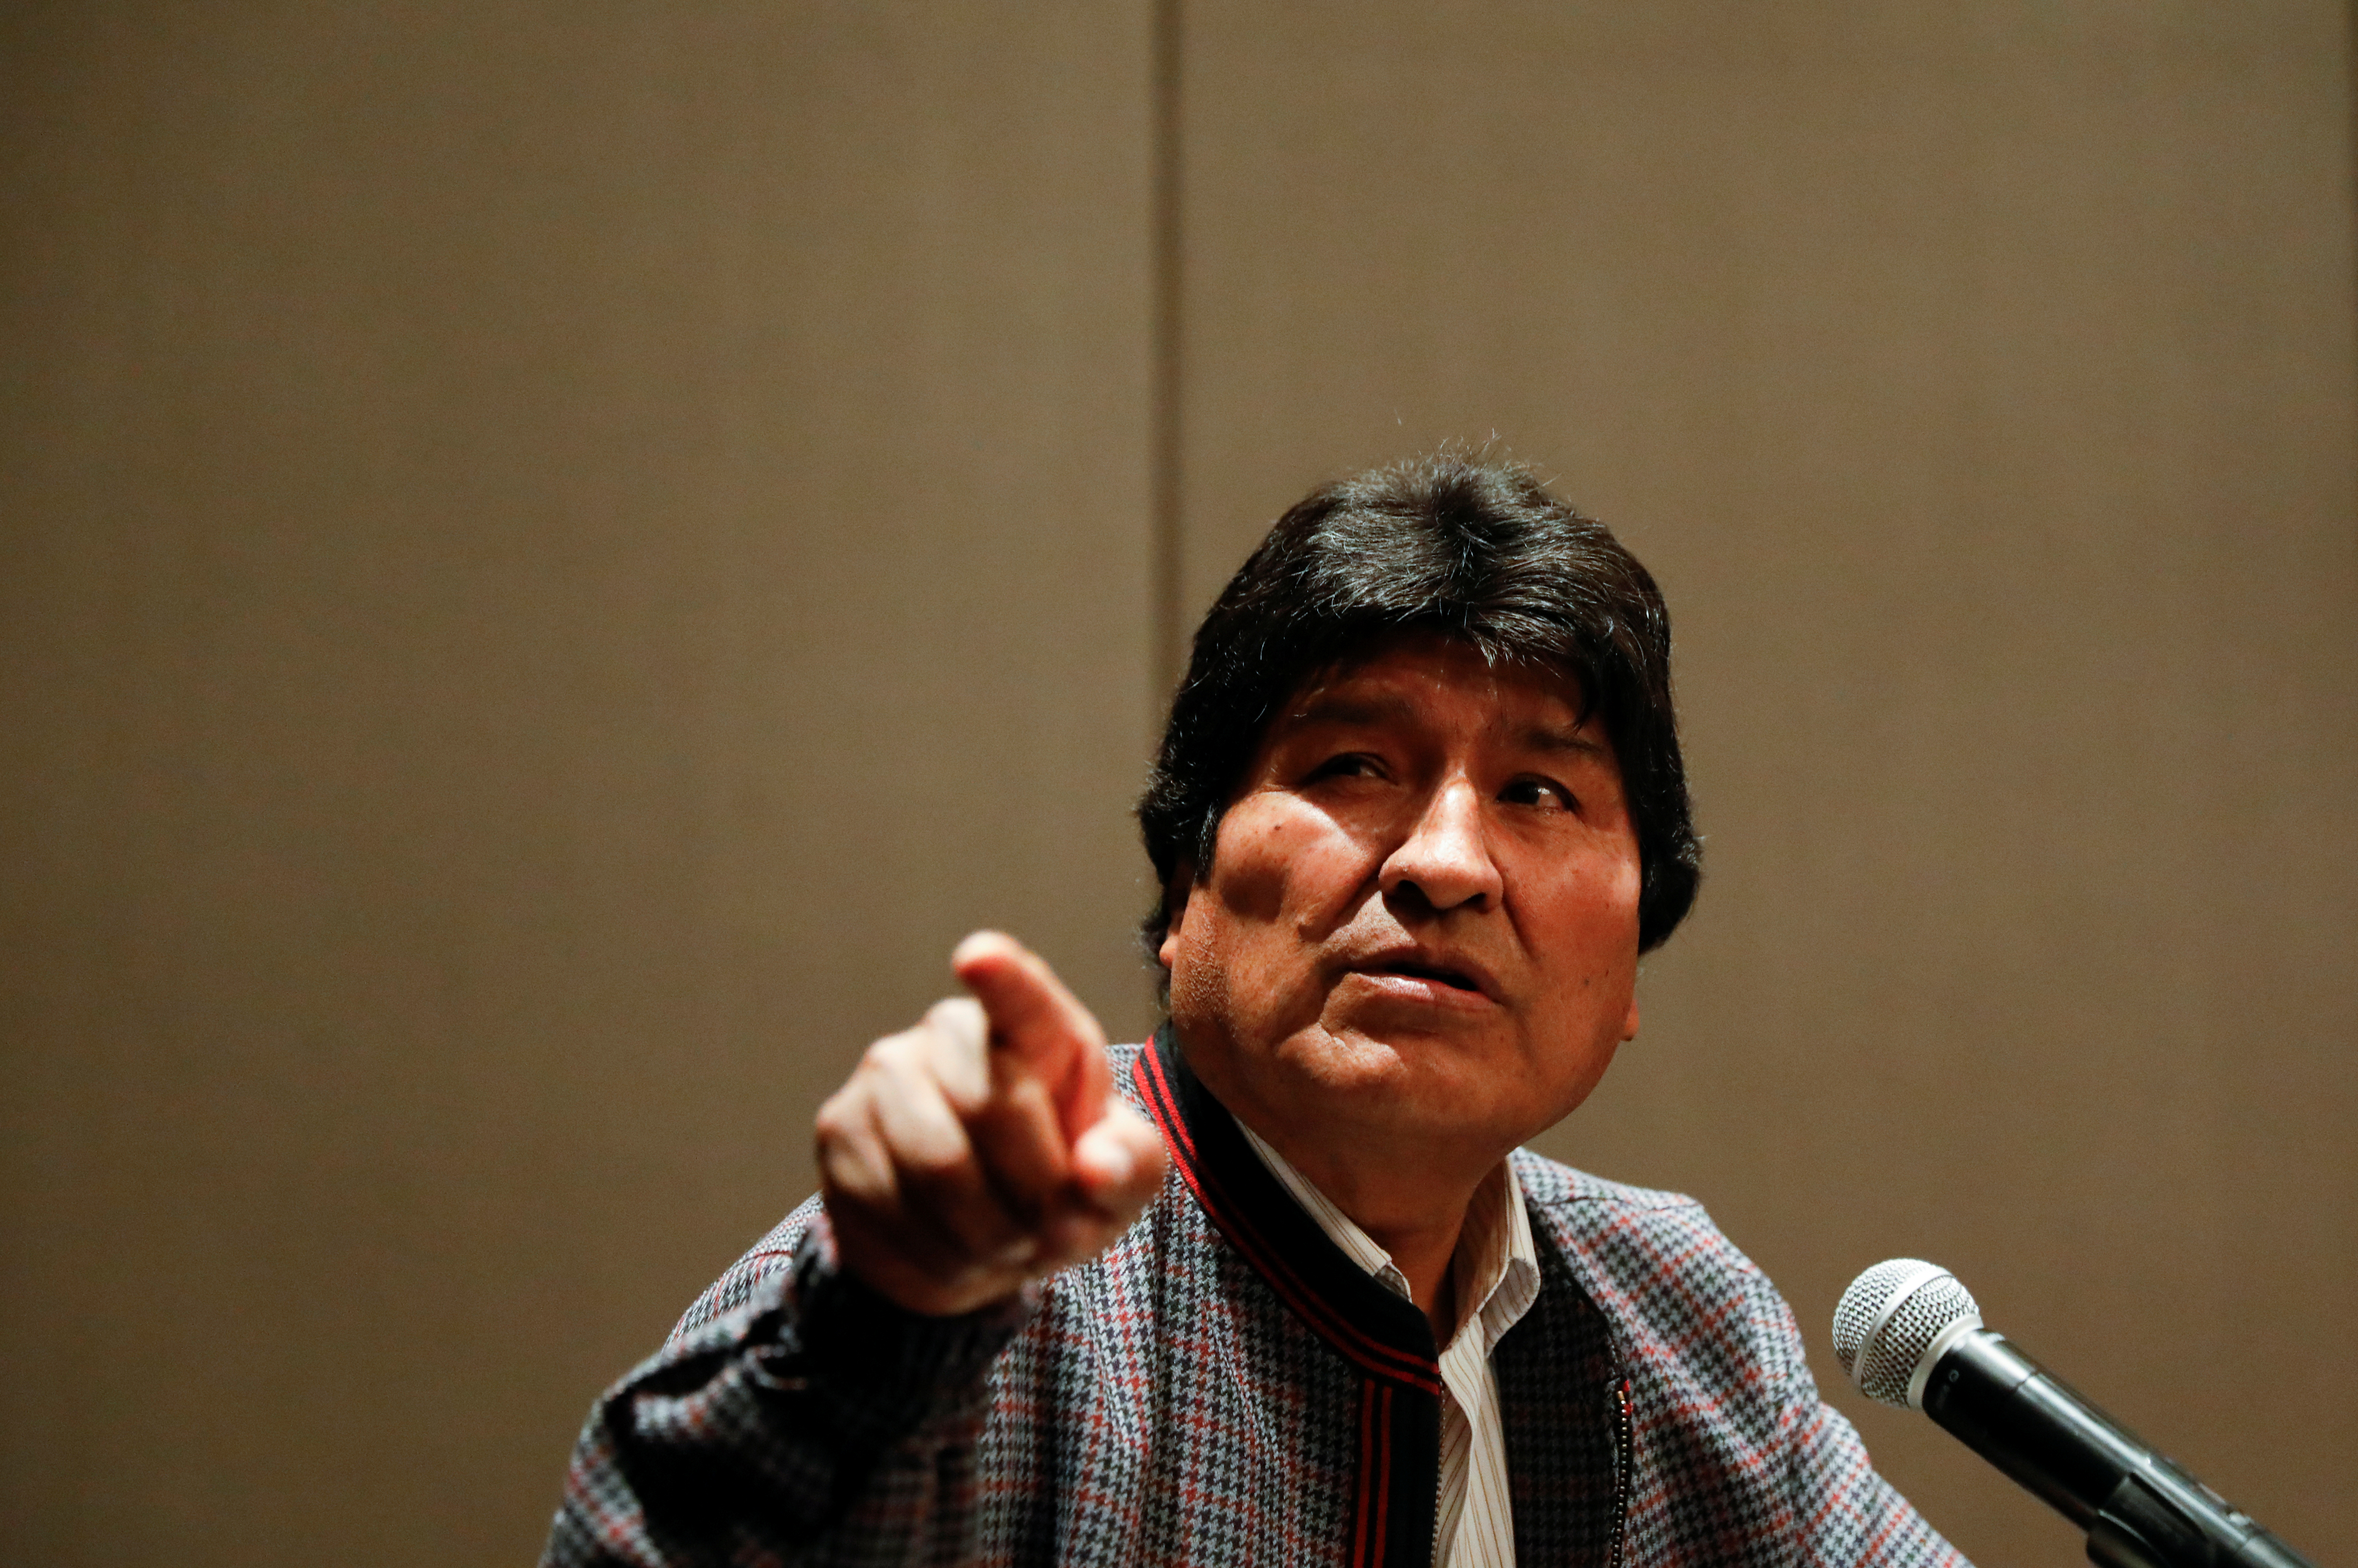 “Επικεφαλής της εκστρατείας” του κόμματος του ο Μοράλες εν όψει των επόμενων εκλογών στη Βολιβία